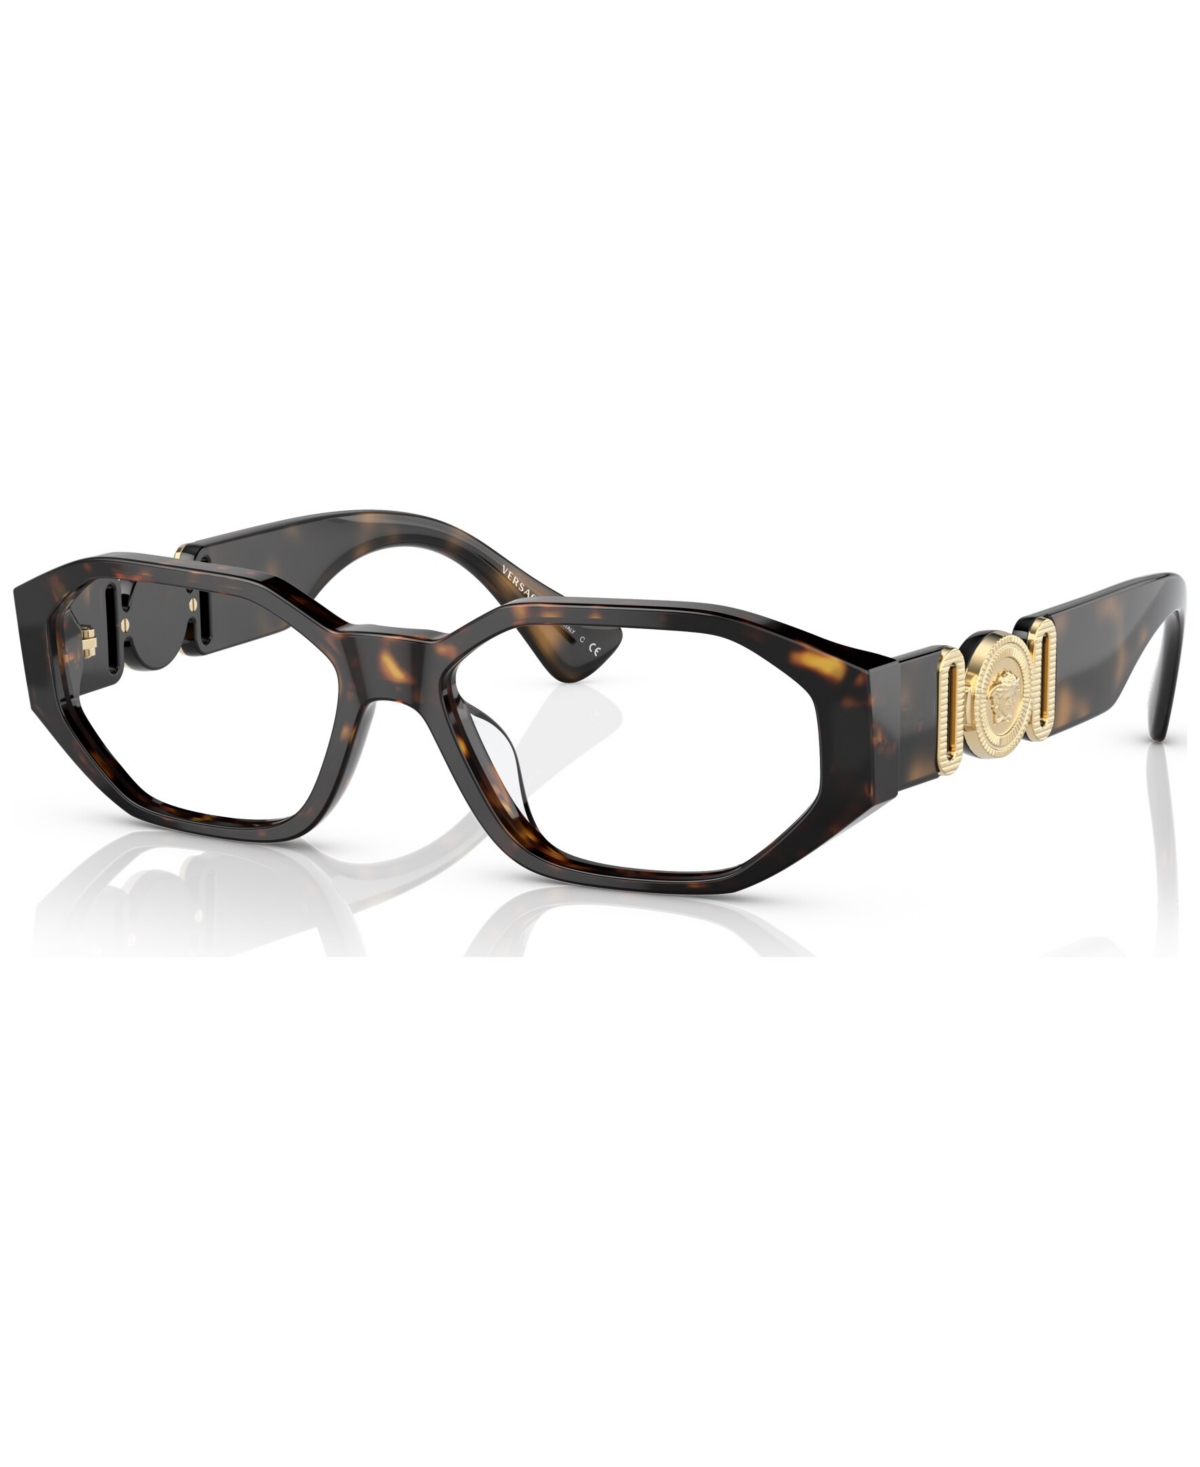 Men's Eyeglasses, VE3320U 56 - Havana